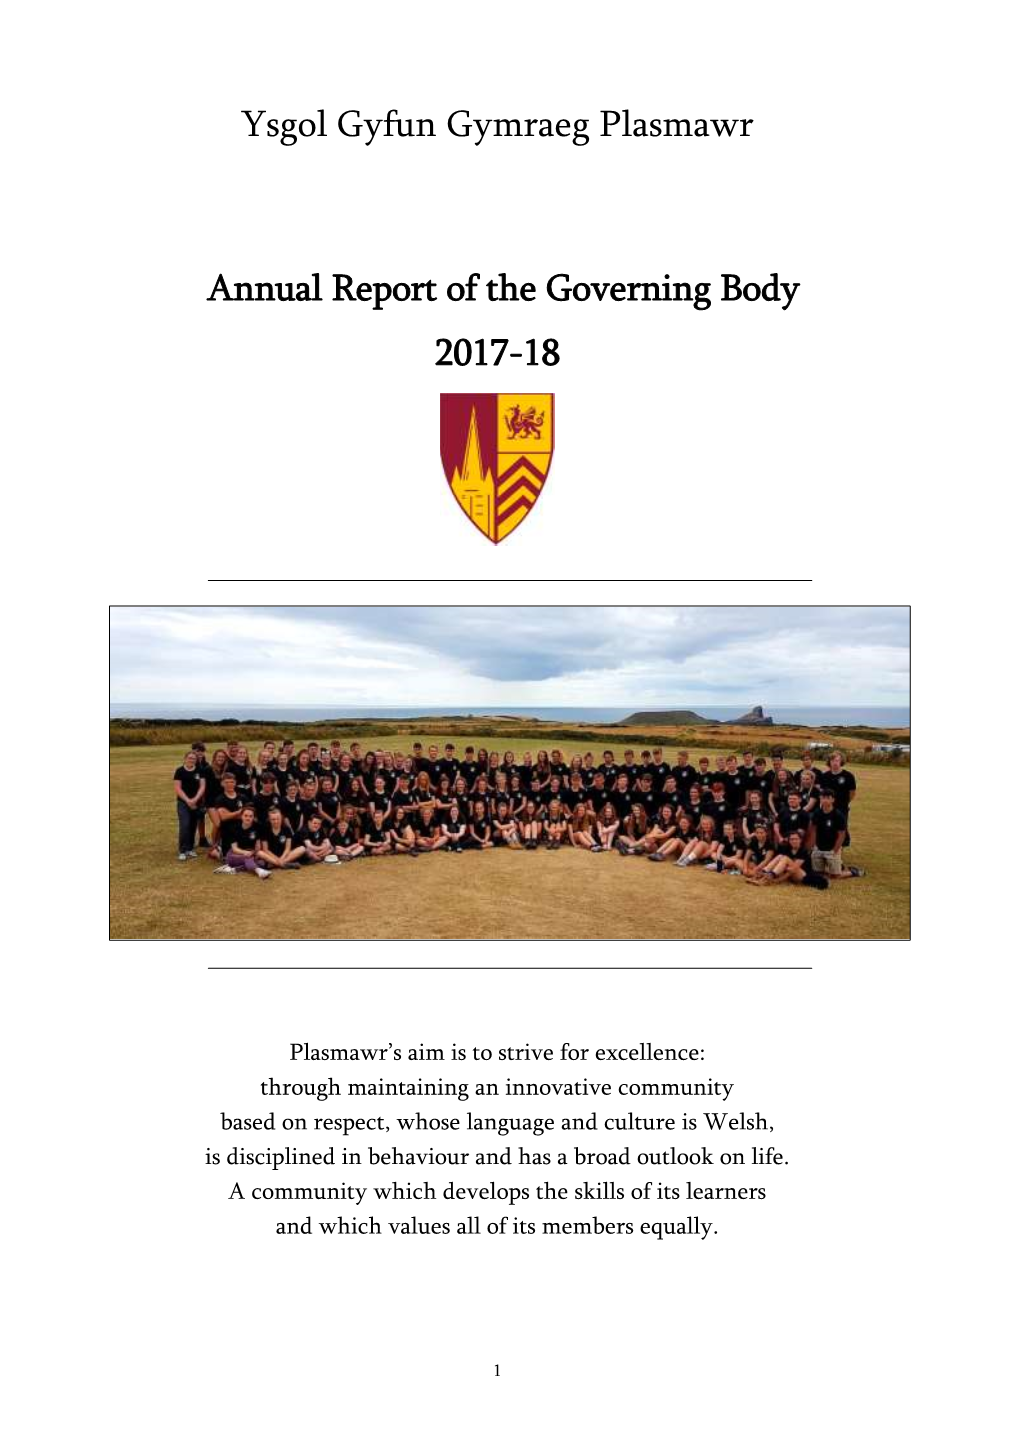 Ysgol Gyfun Gymraeg Plasmawr Annual Report of the Governing